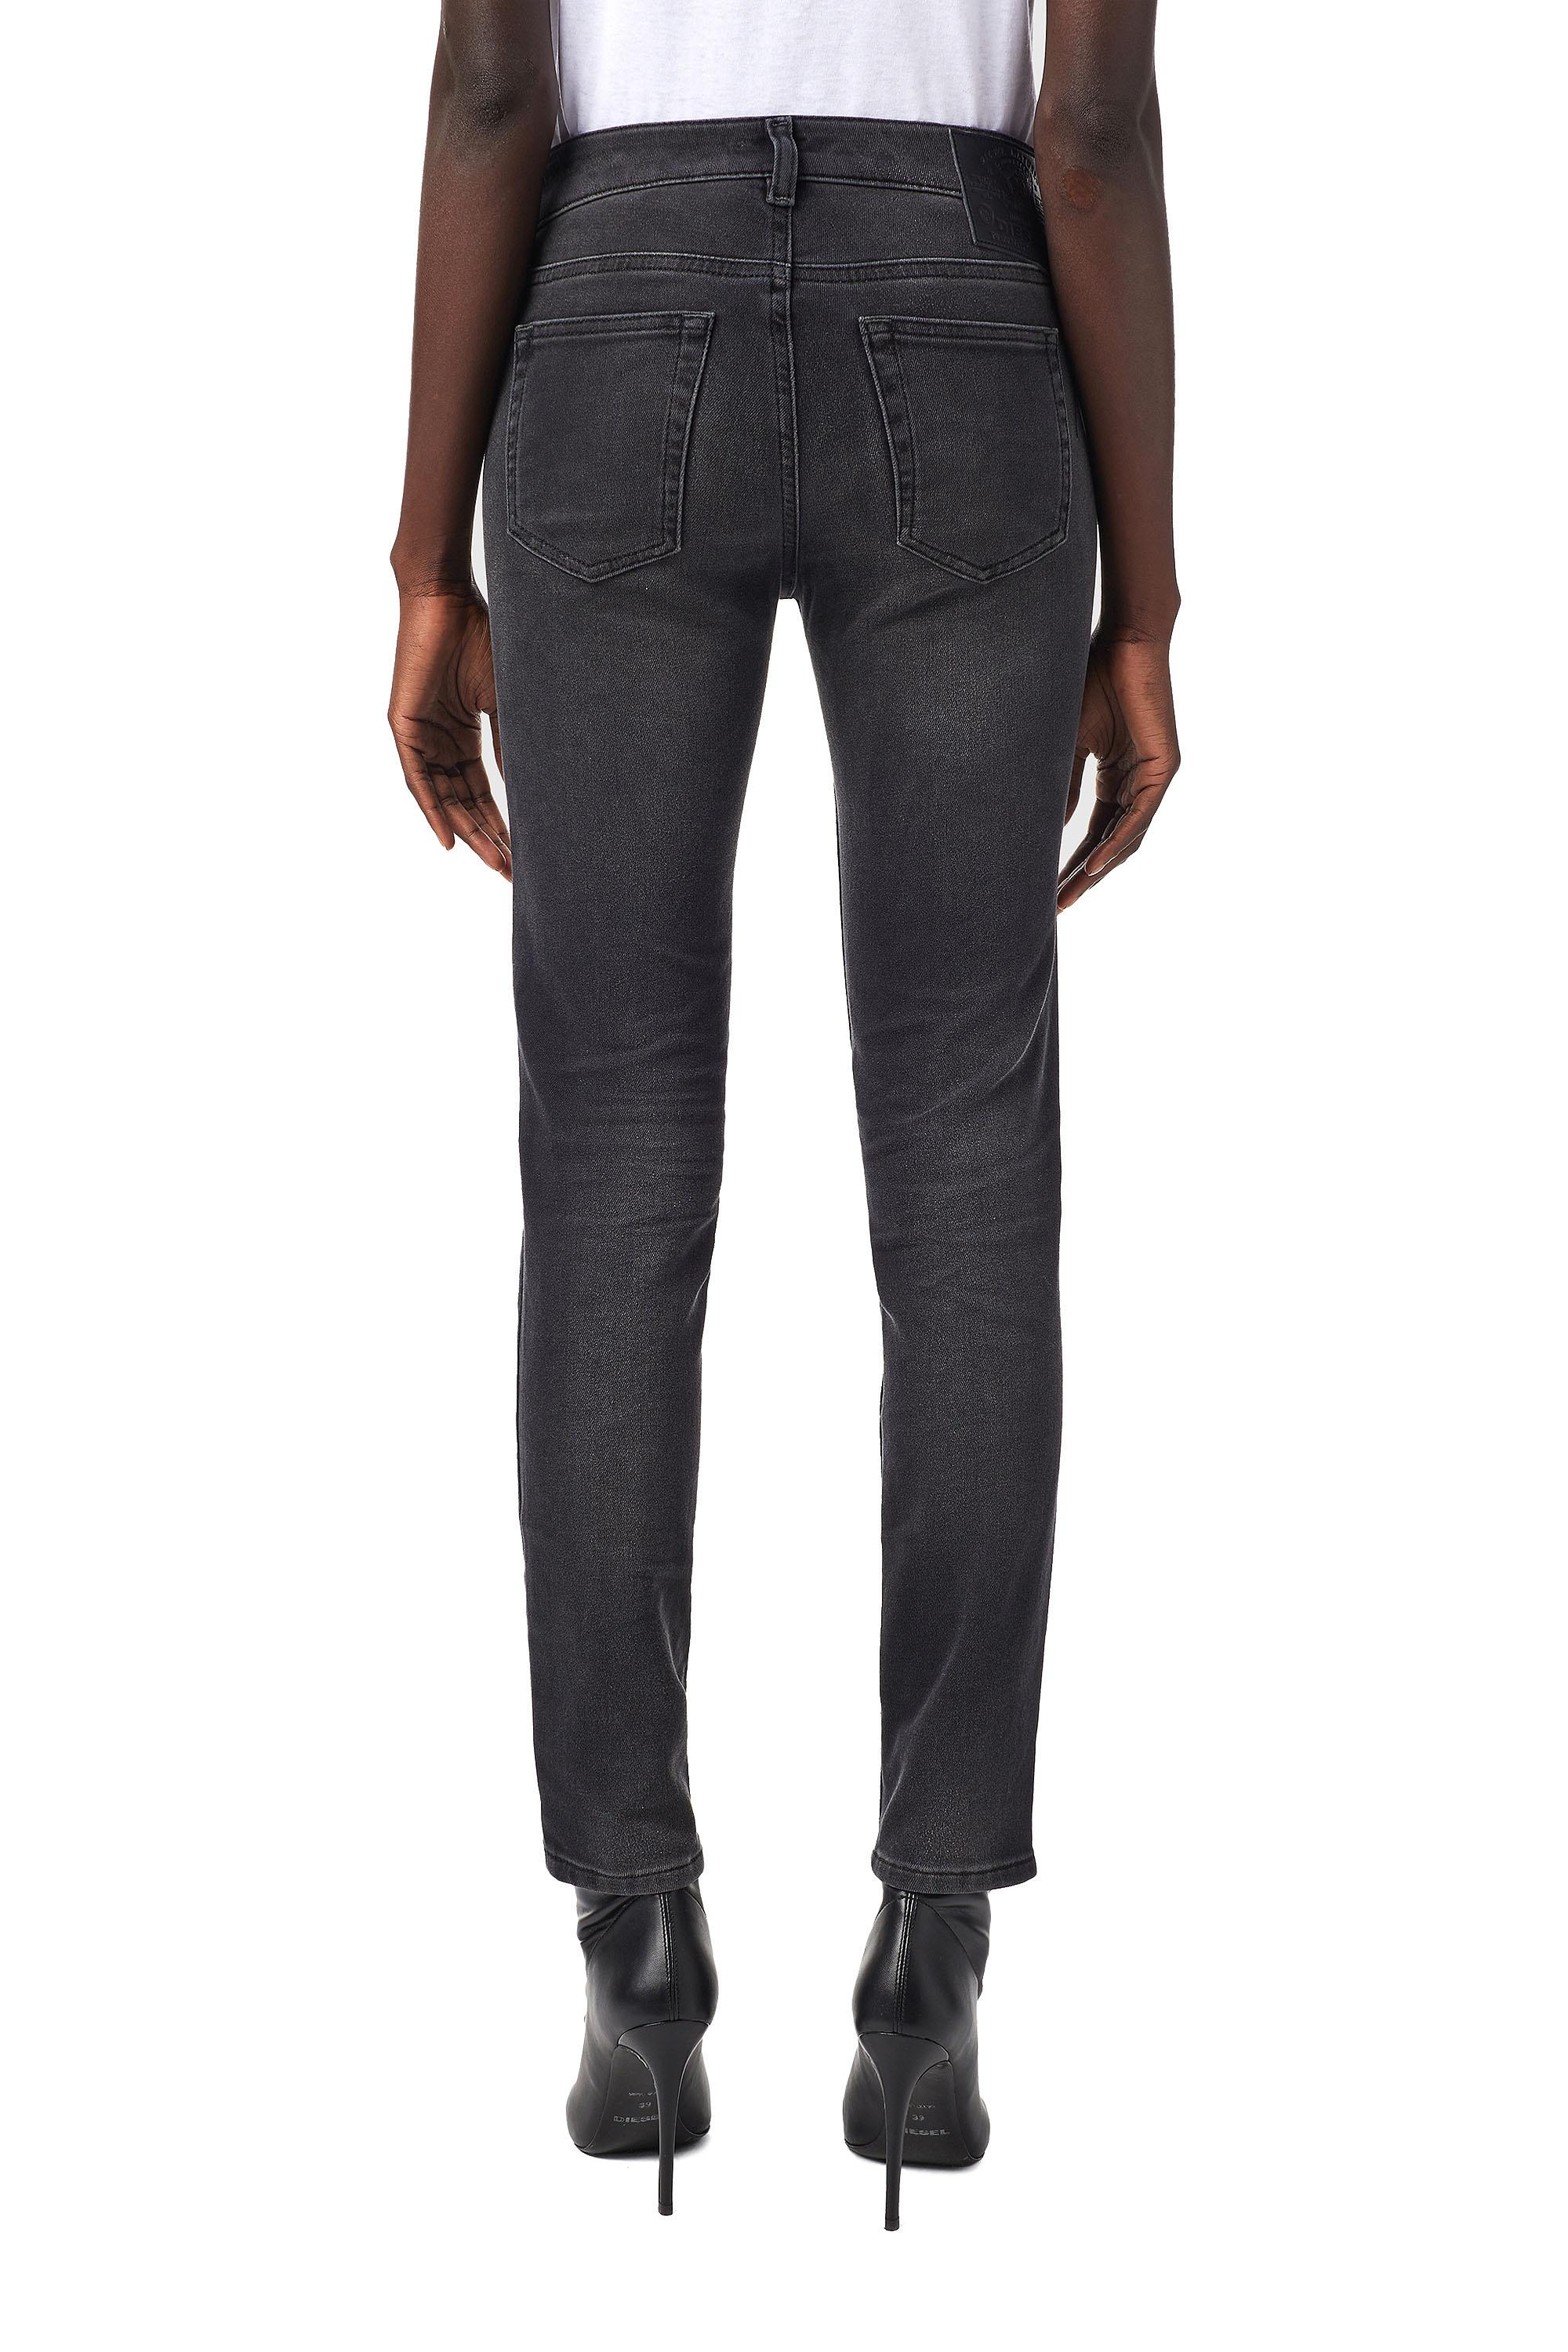 Diesel - D-Ollies Slim JoggJeans® 09B22, Black/Dark grey - Image 5